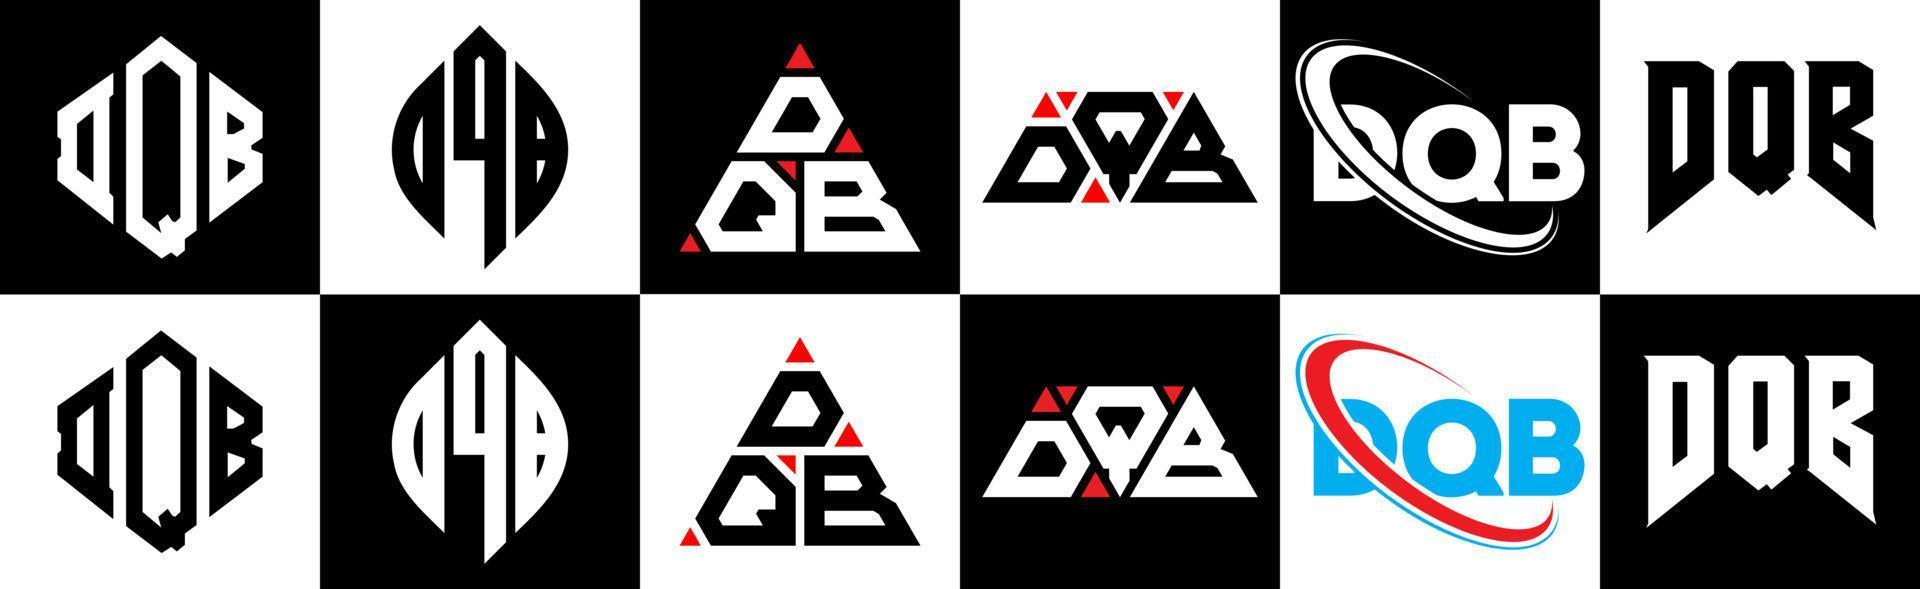 dqb-Buchstaben-Logo-Design in sechs Stilen. dqb Polygon, Kreis, Dreieck, Sechseck, flacher und einfacher Stil mit schwarz-weißem Buchstabenlogo in einer Zeichenfläche. dqb minimalistisches und klassisches Logo vektor